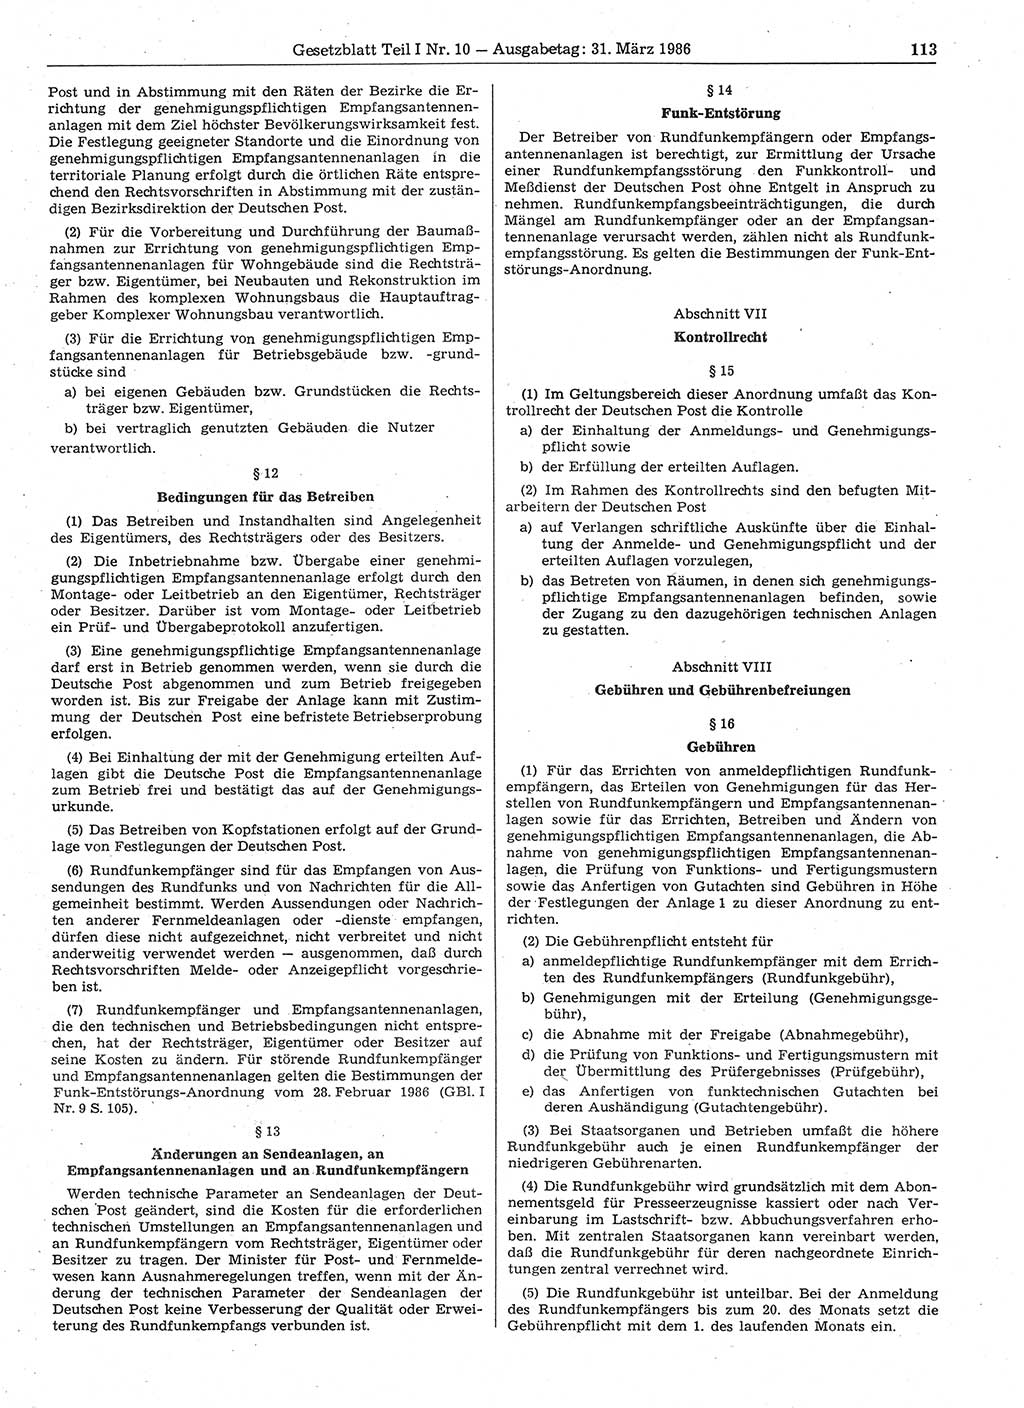 Gesetzblatt (GBl.) der Deutschen Demokratischen Republik (DDR) Teil Ⅰ 1986, Seite 113 (GBl. DDR Ⅰ 1986, S. 113)